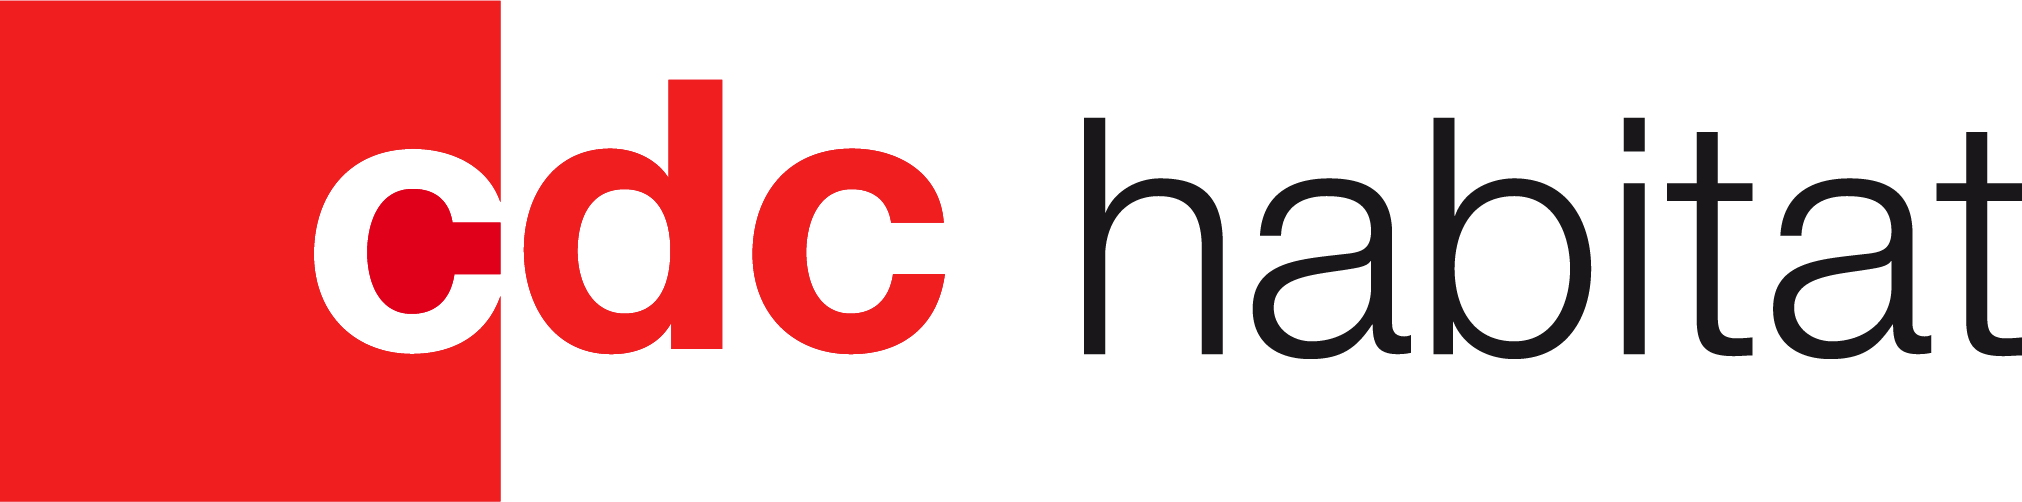 CDC-habitat-logo